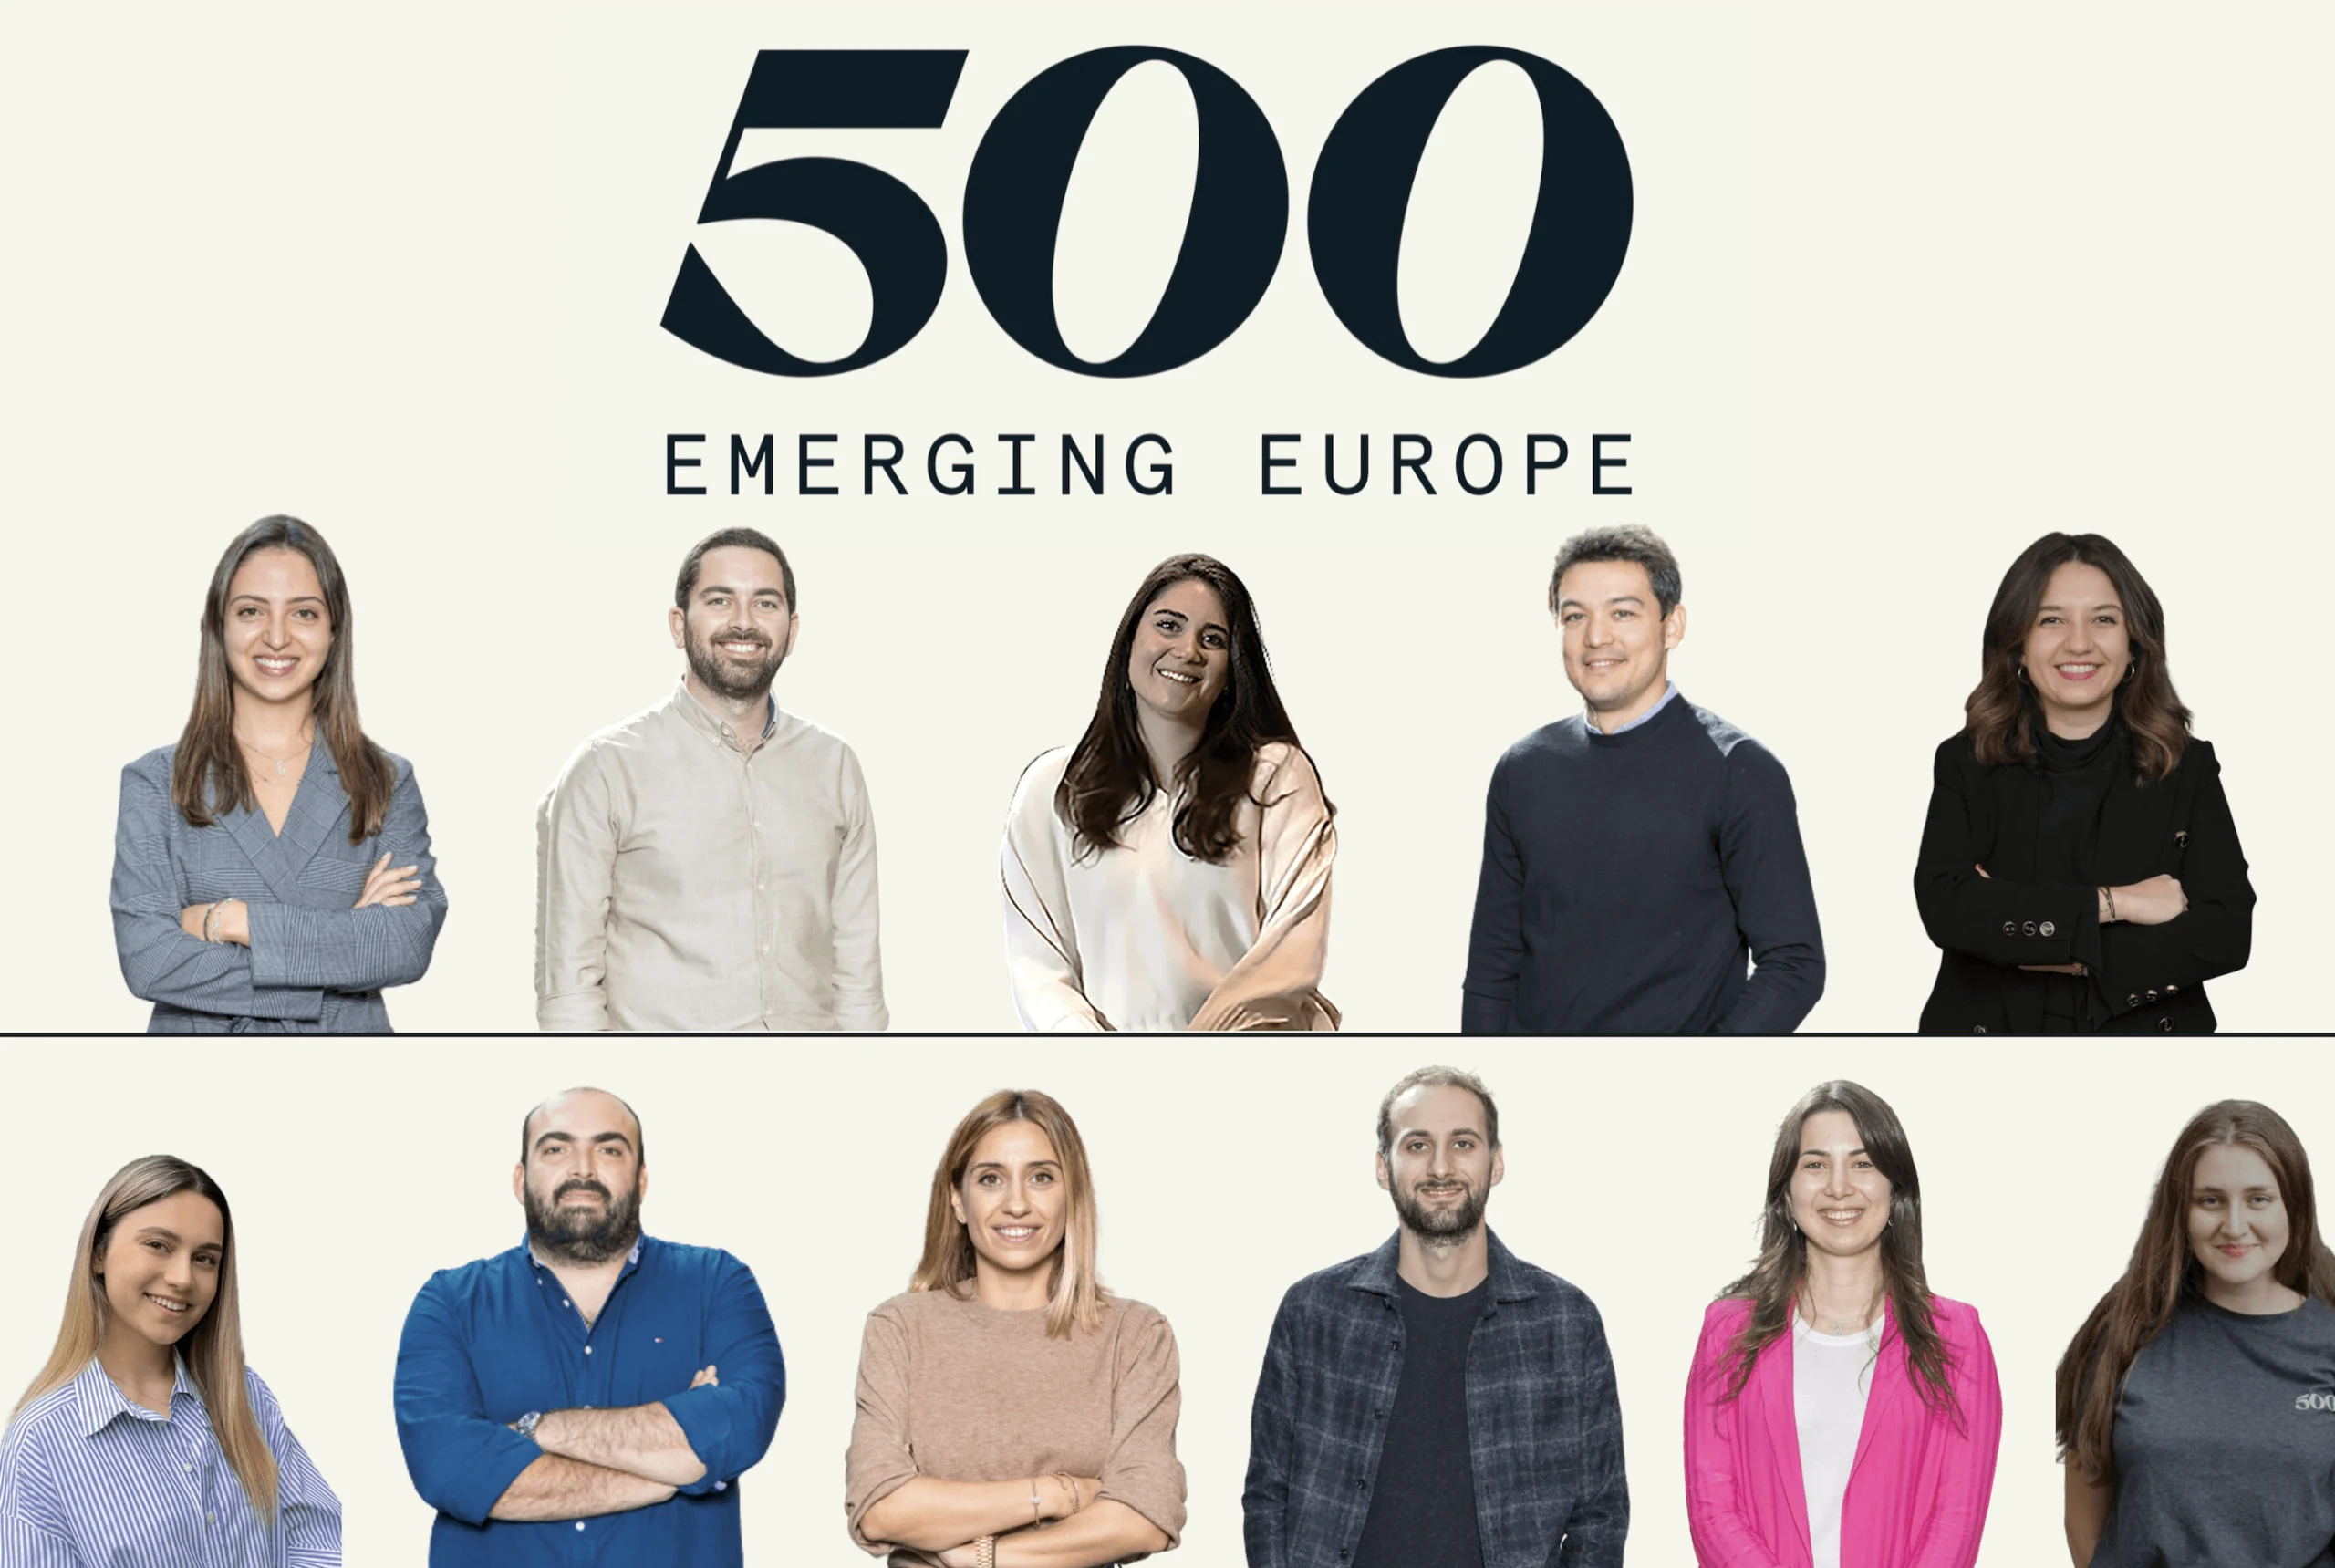 Yeni Fonuyla Beraber 500 Istanbul Adını 500 Emerging Europe Olarak Değiştiriyor